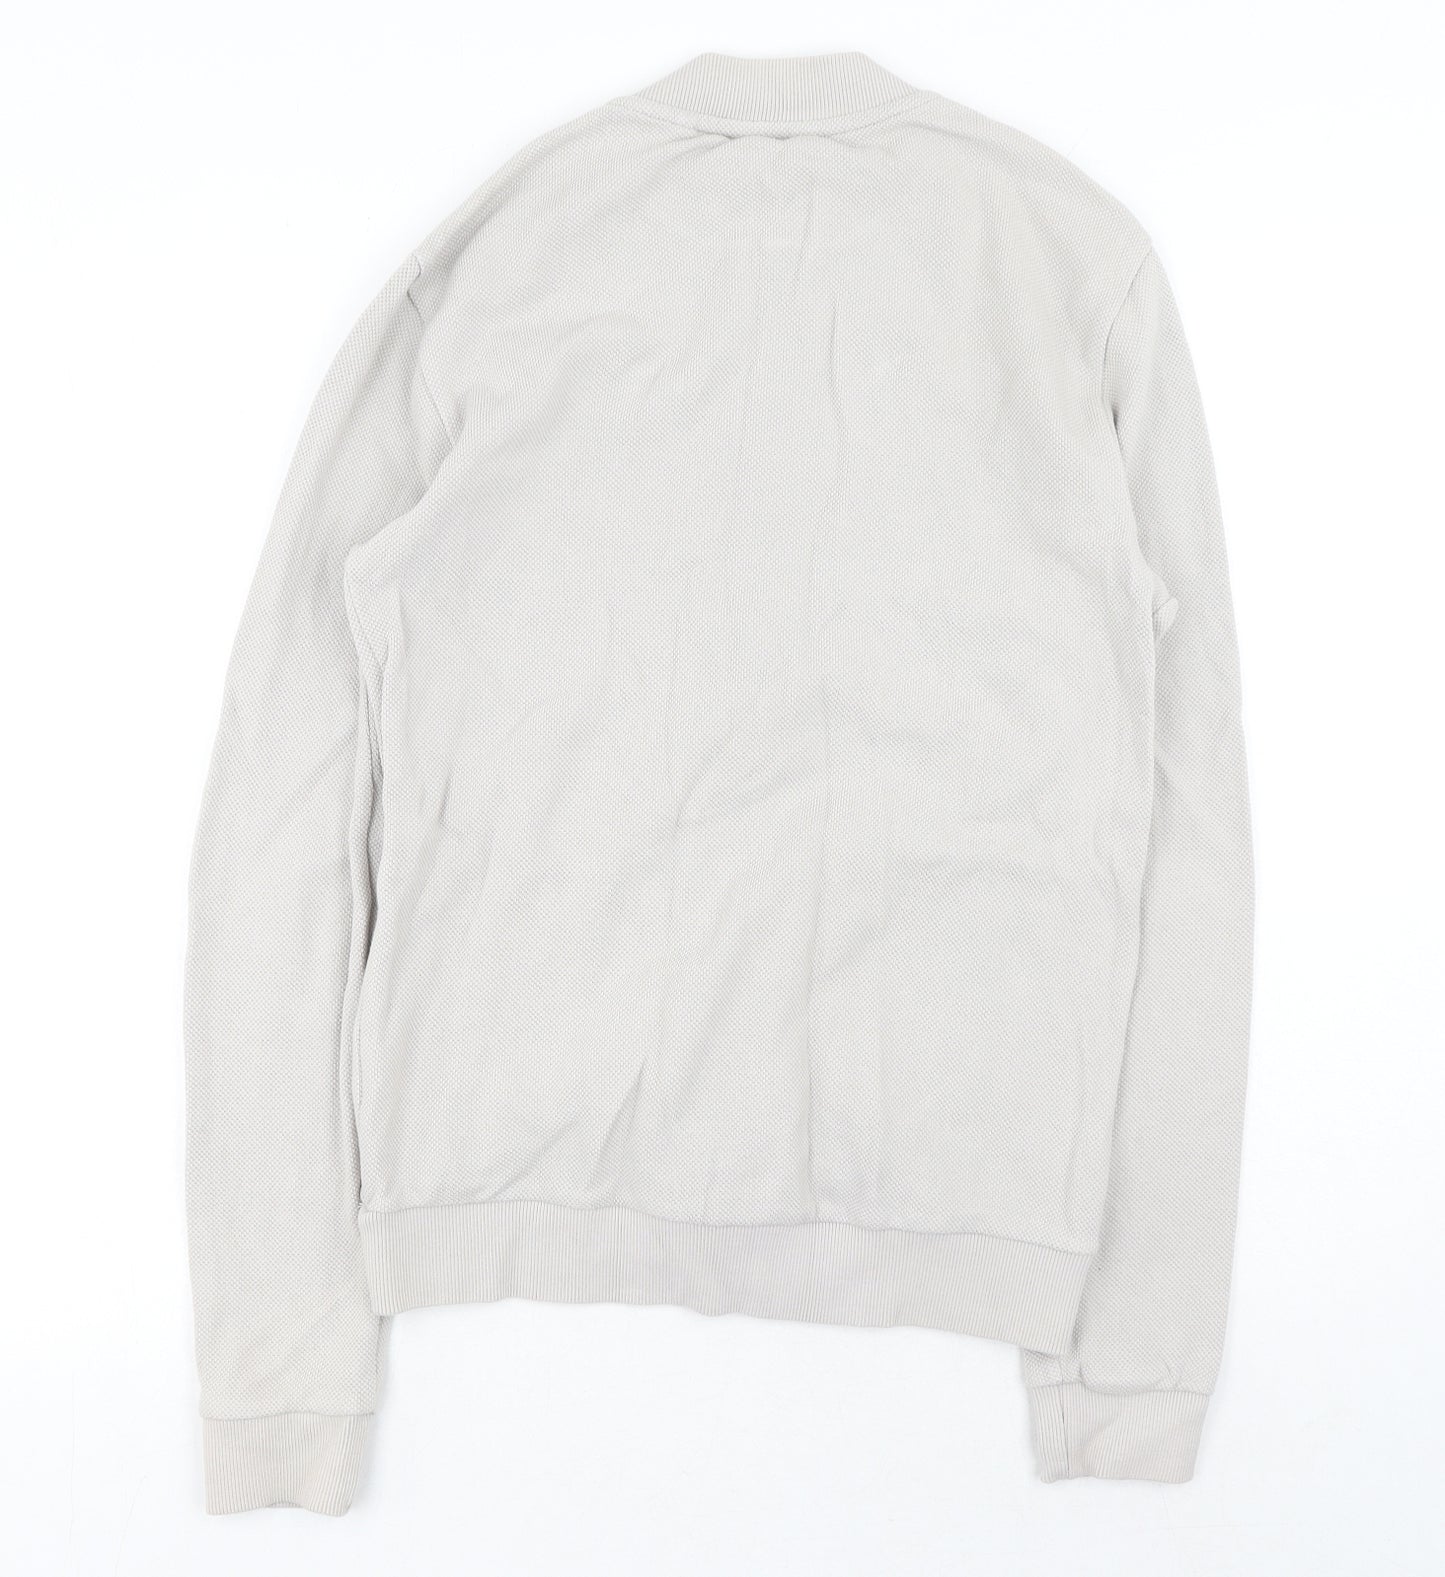 NEXT Mens Grey Cotton Full Zip Sweatshirt Size S